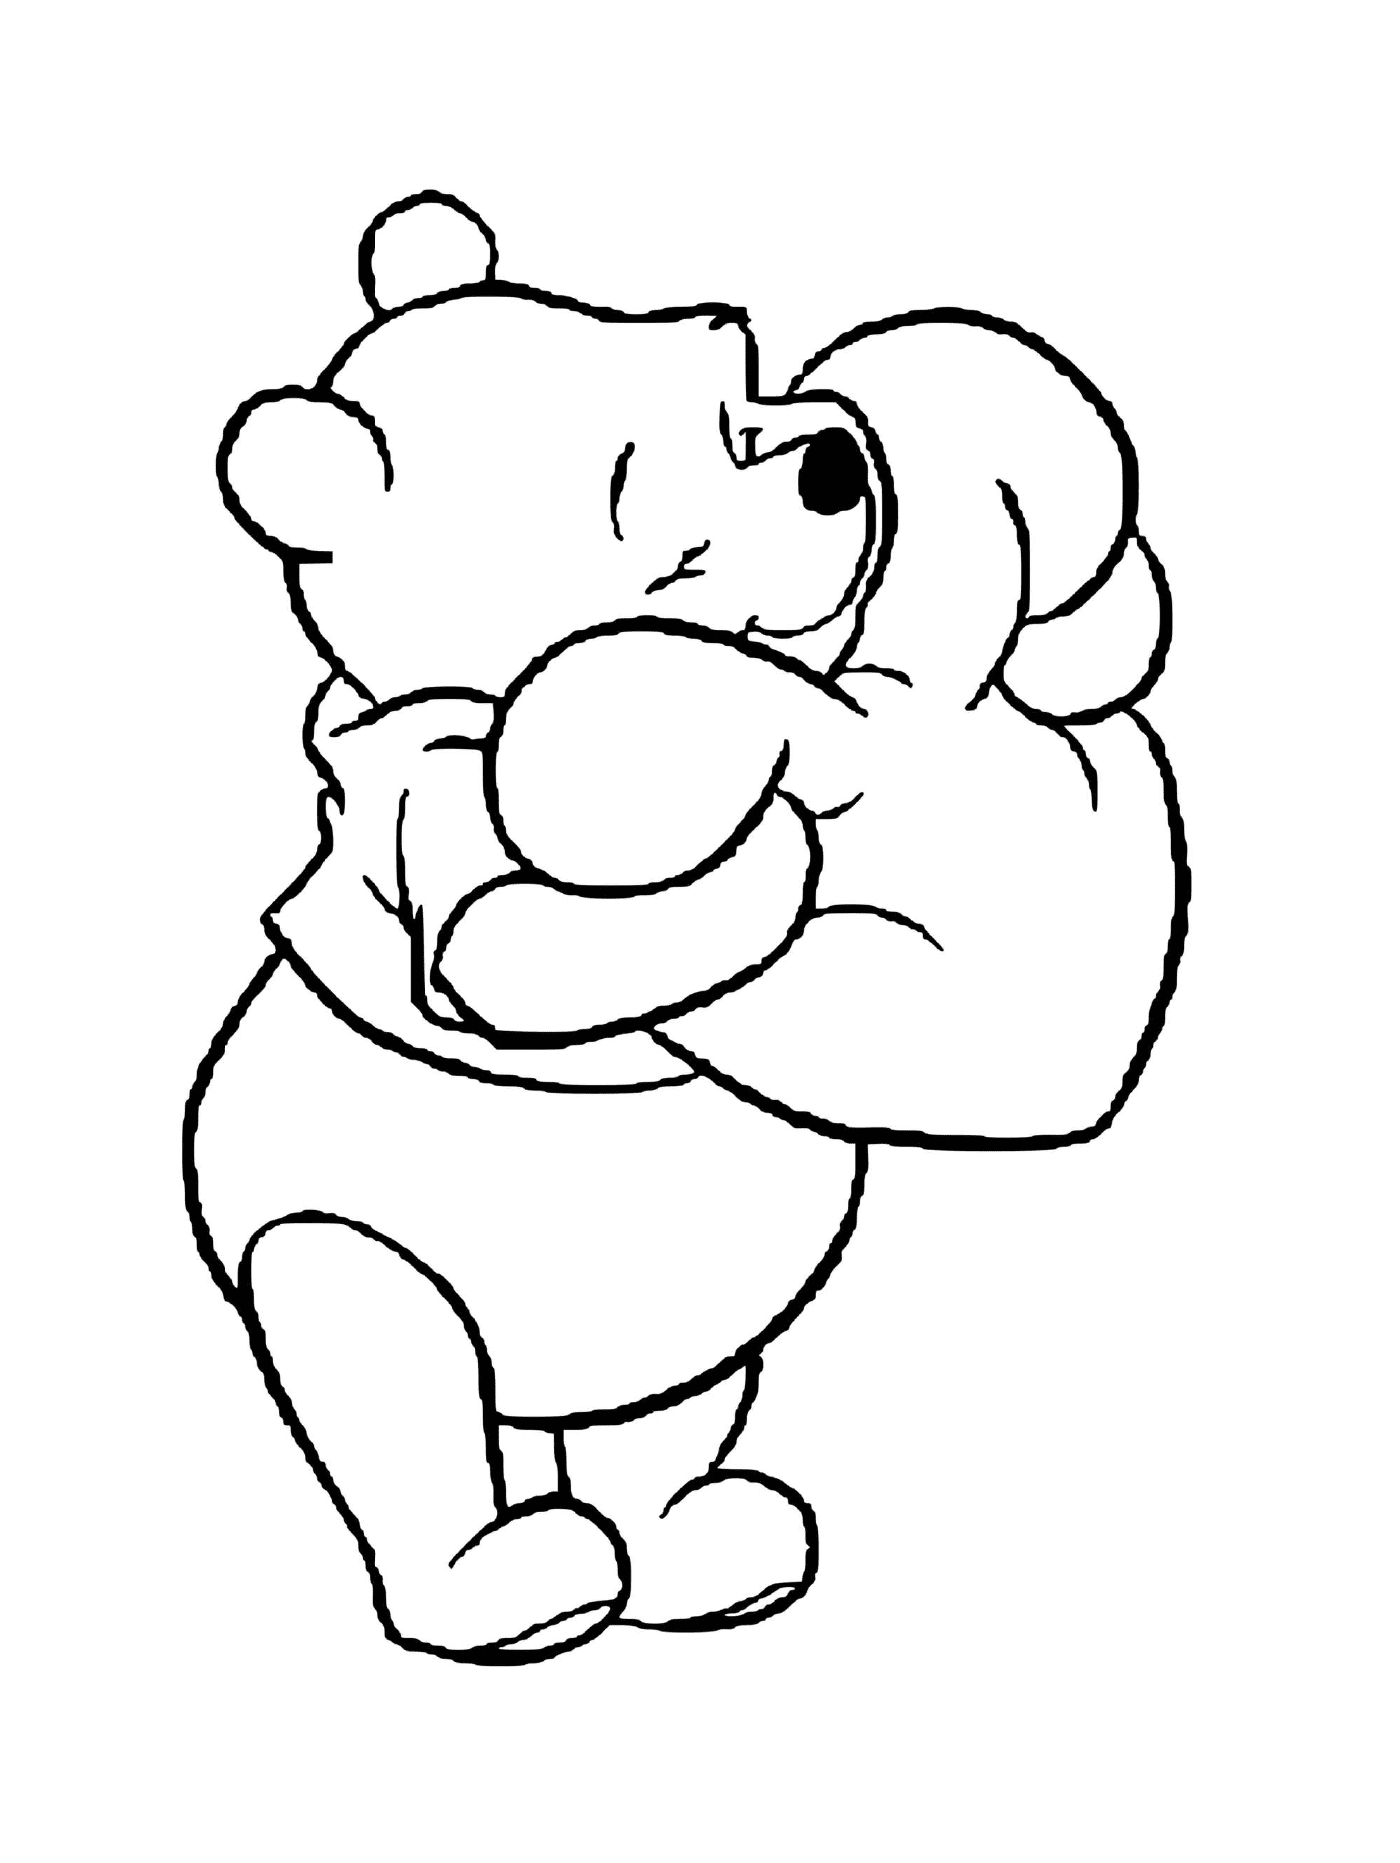  Winnie der Bär erhält ein herzförmiges Kissen 